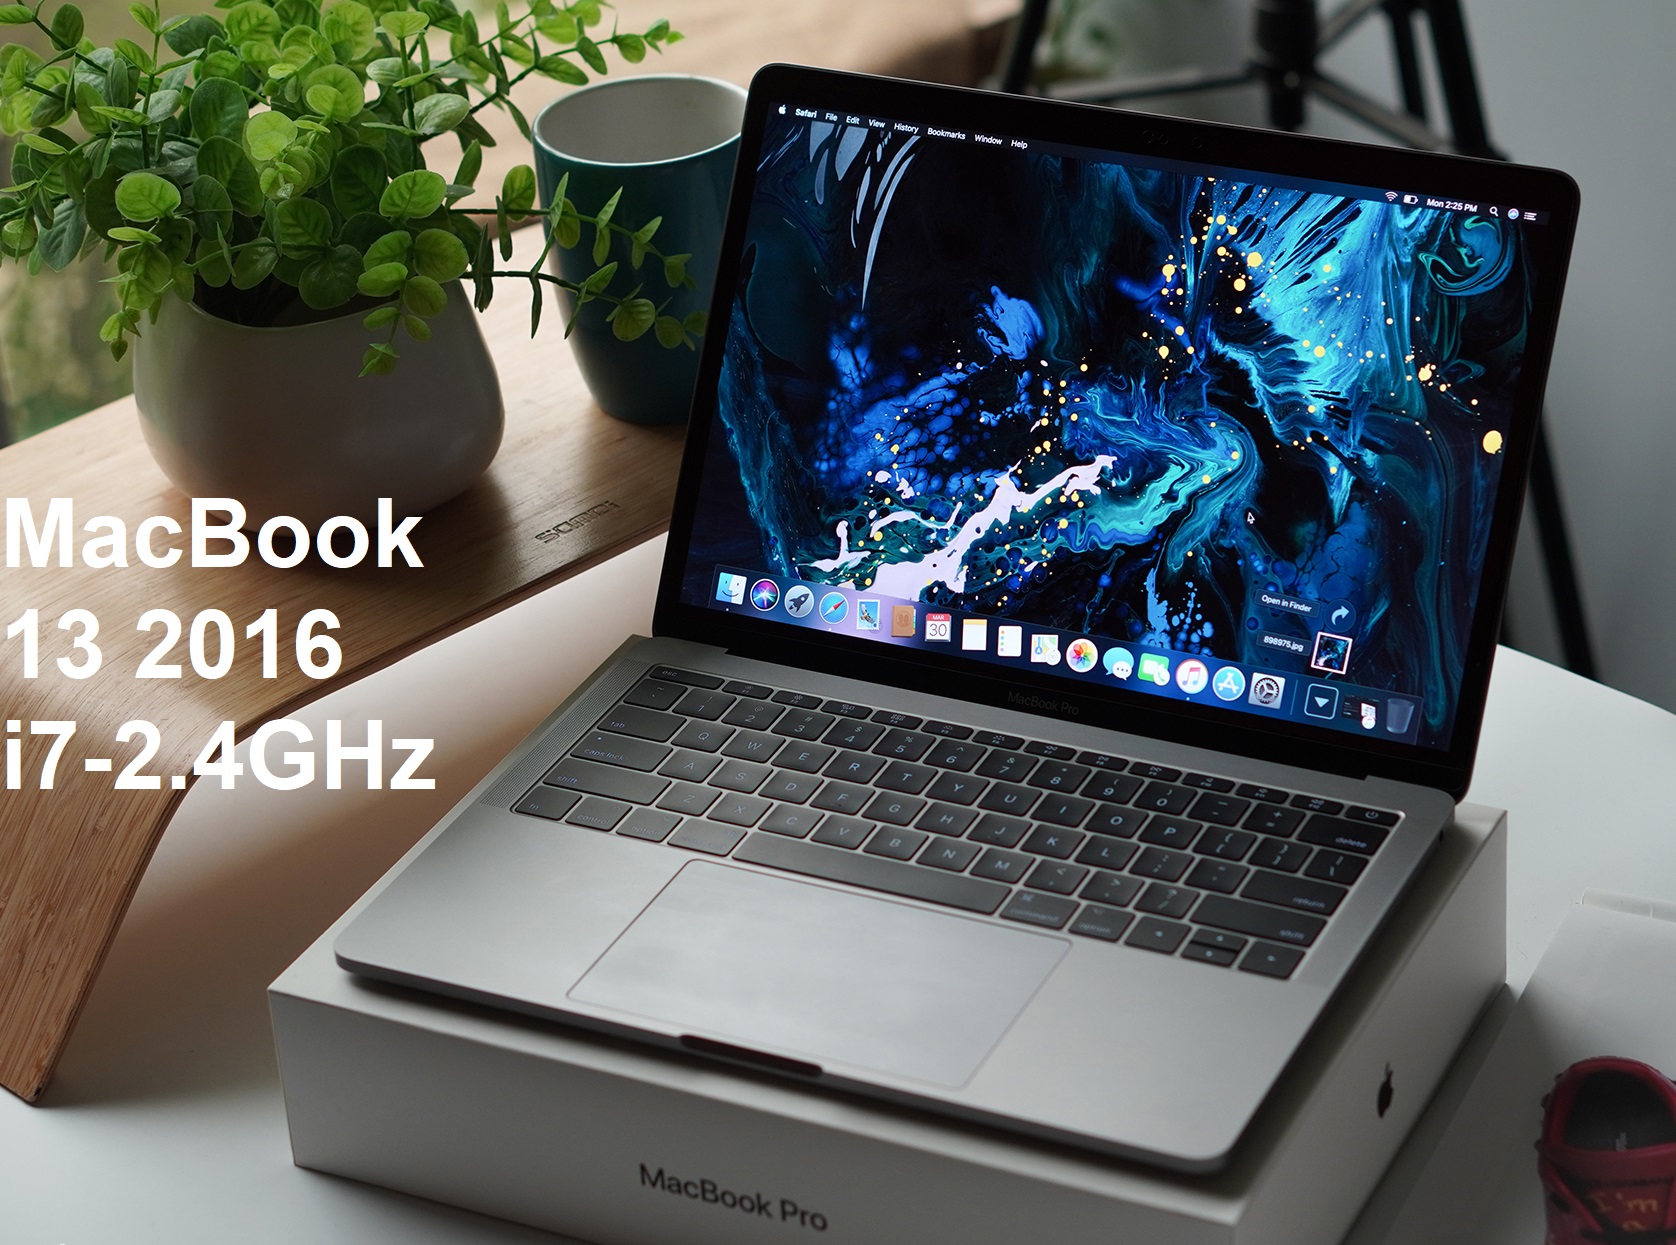 MacBook Pro 13 Late 2016 Core i7-6660U 2.4GHz Ram 8GB SSD 256GB CTO Model A1708 EMC 2978